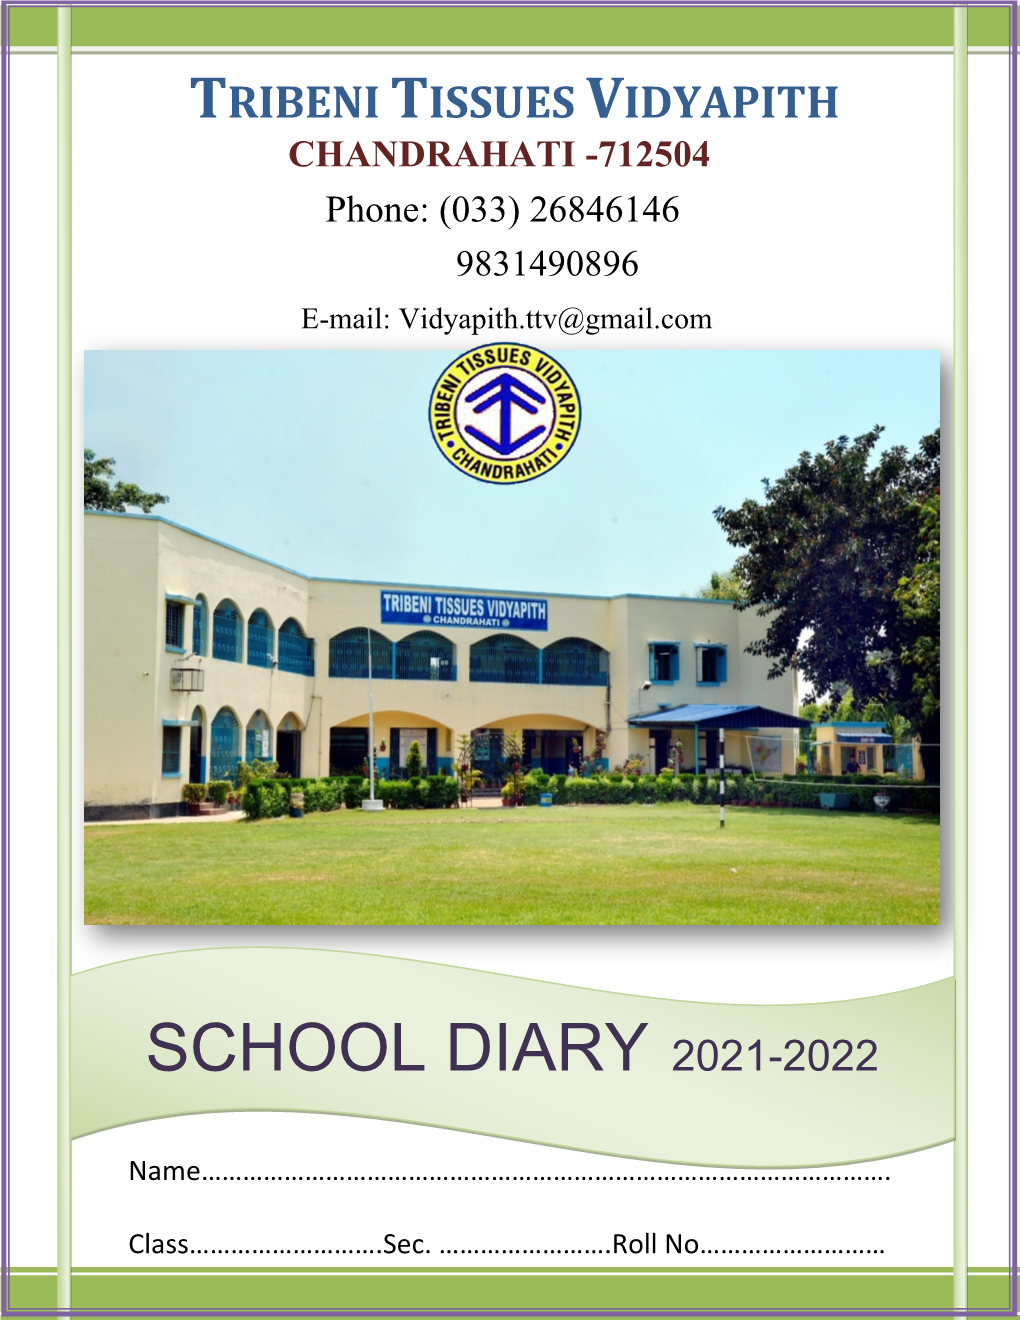 School Diary 2021-2022